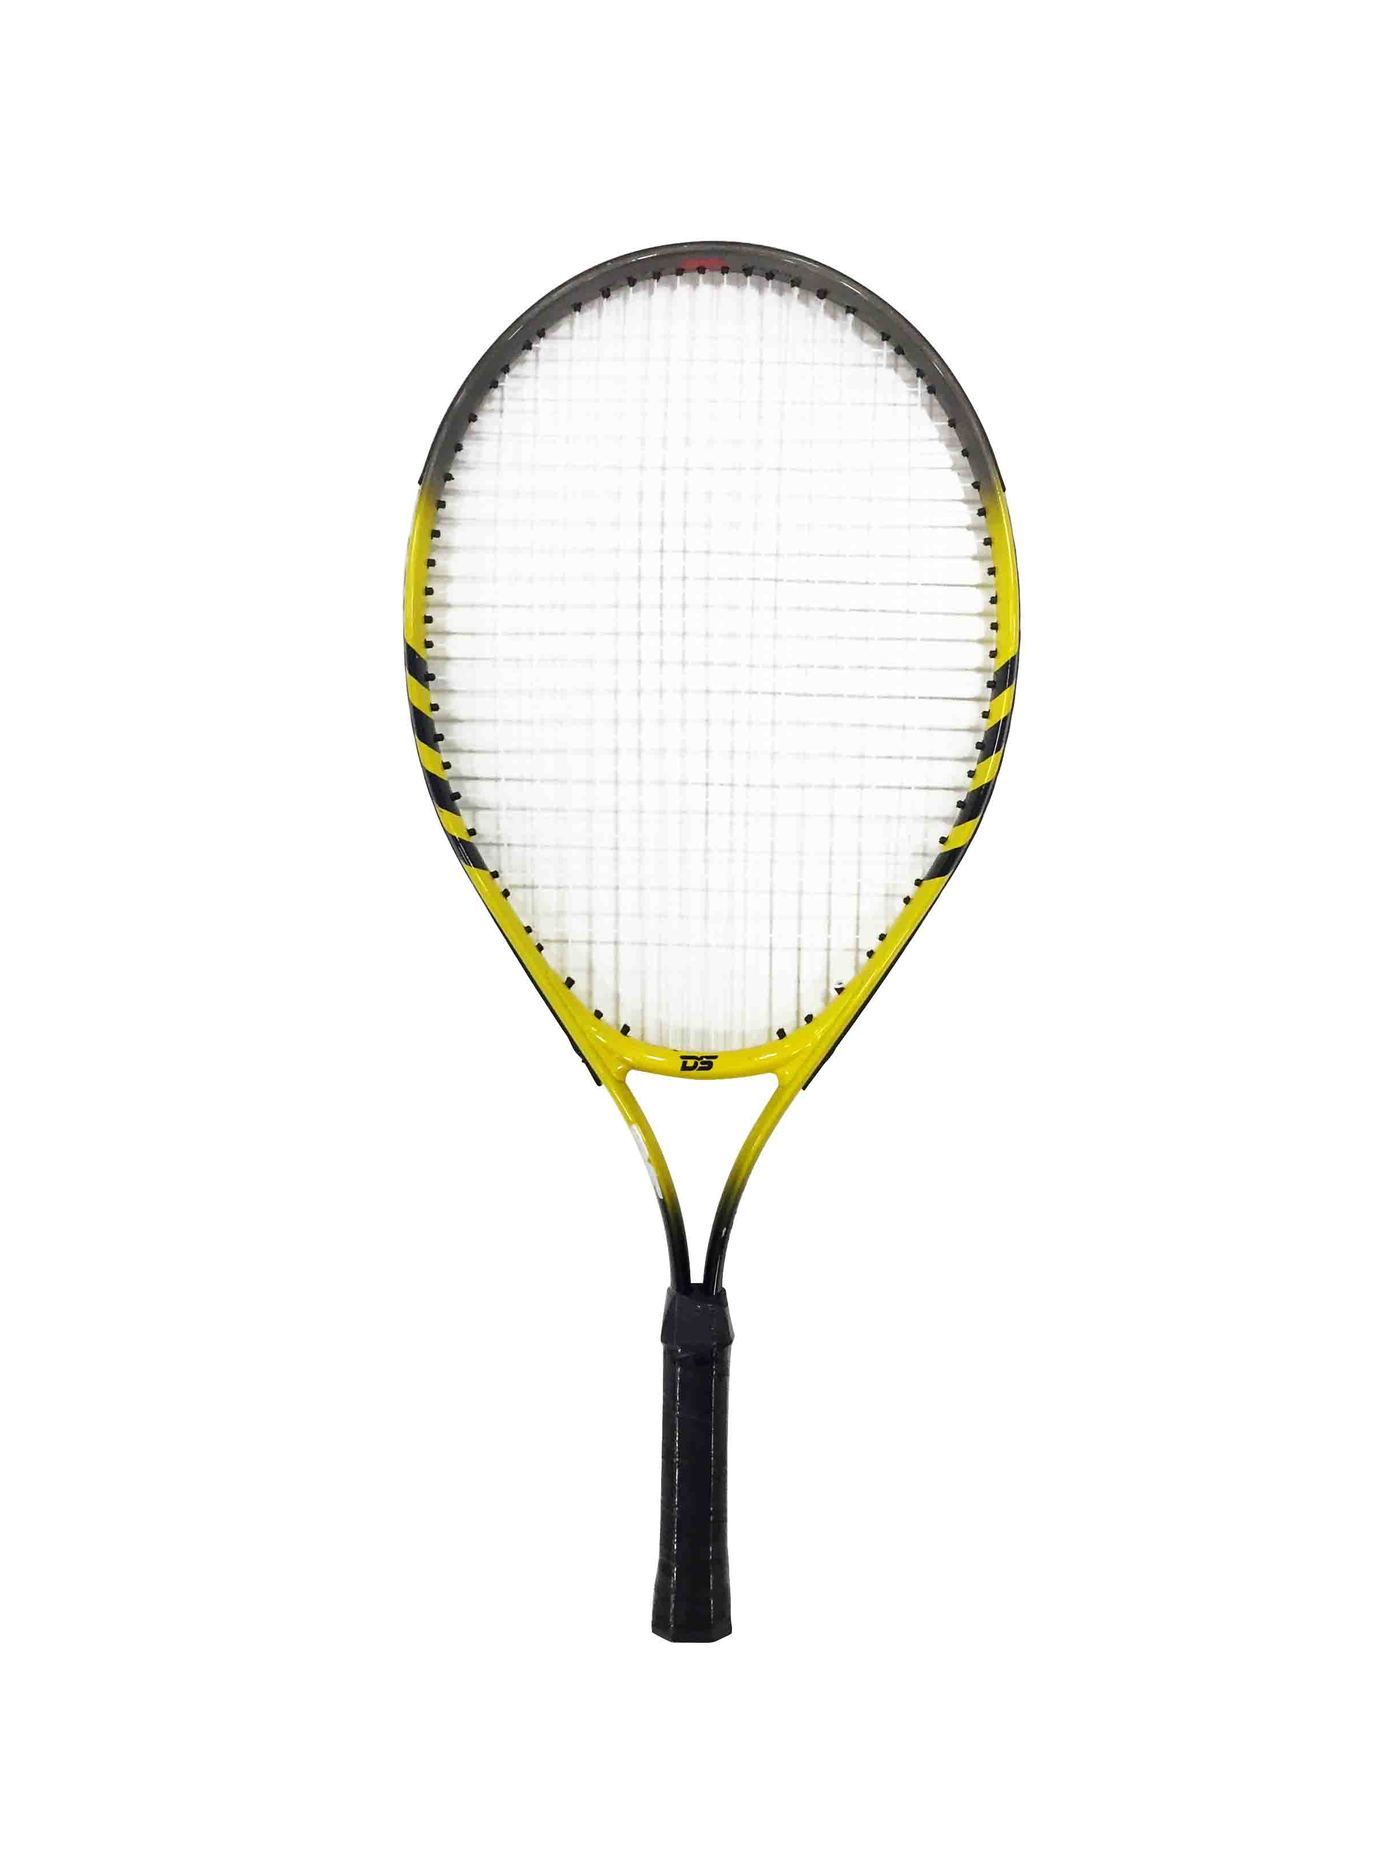 Dawson Sports - Basic Tennis Racket 23 inch